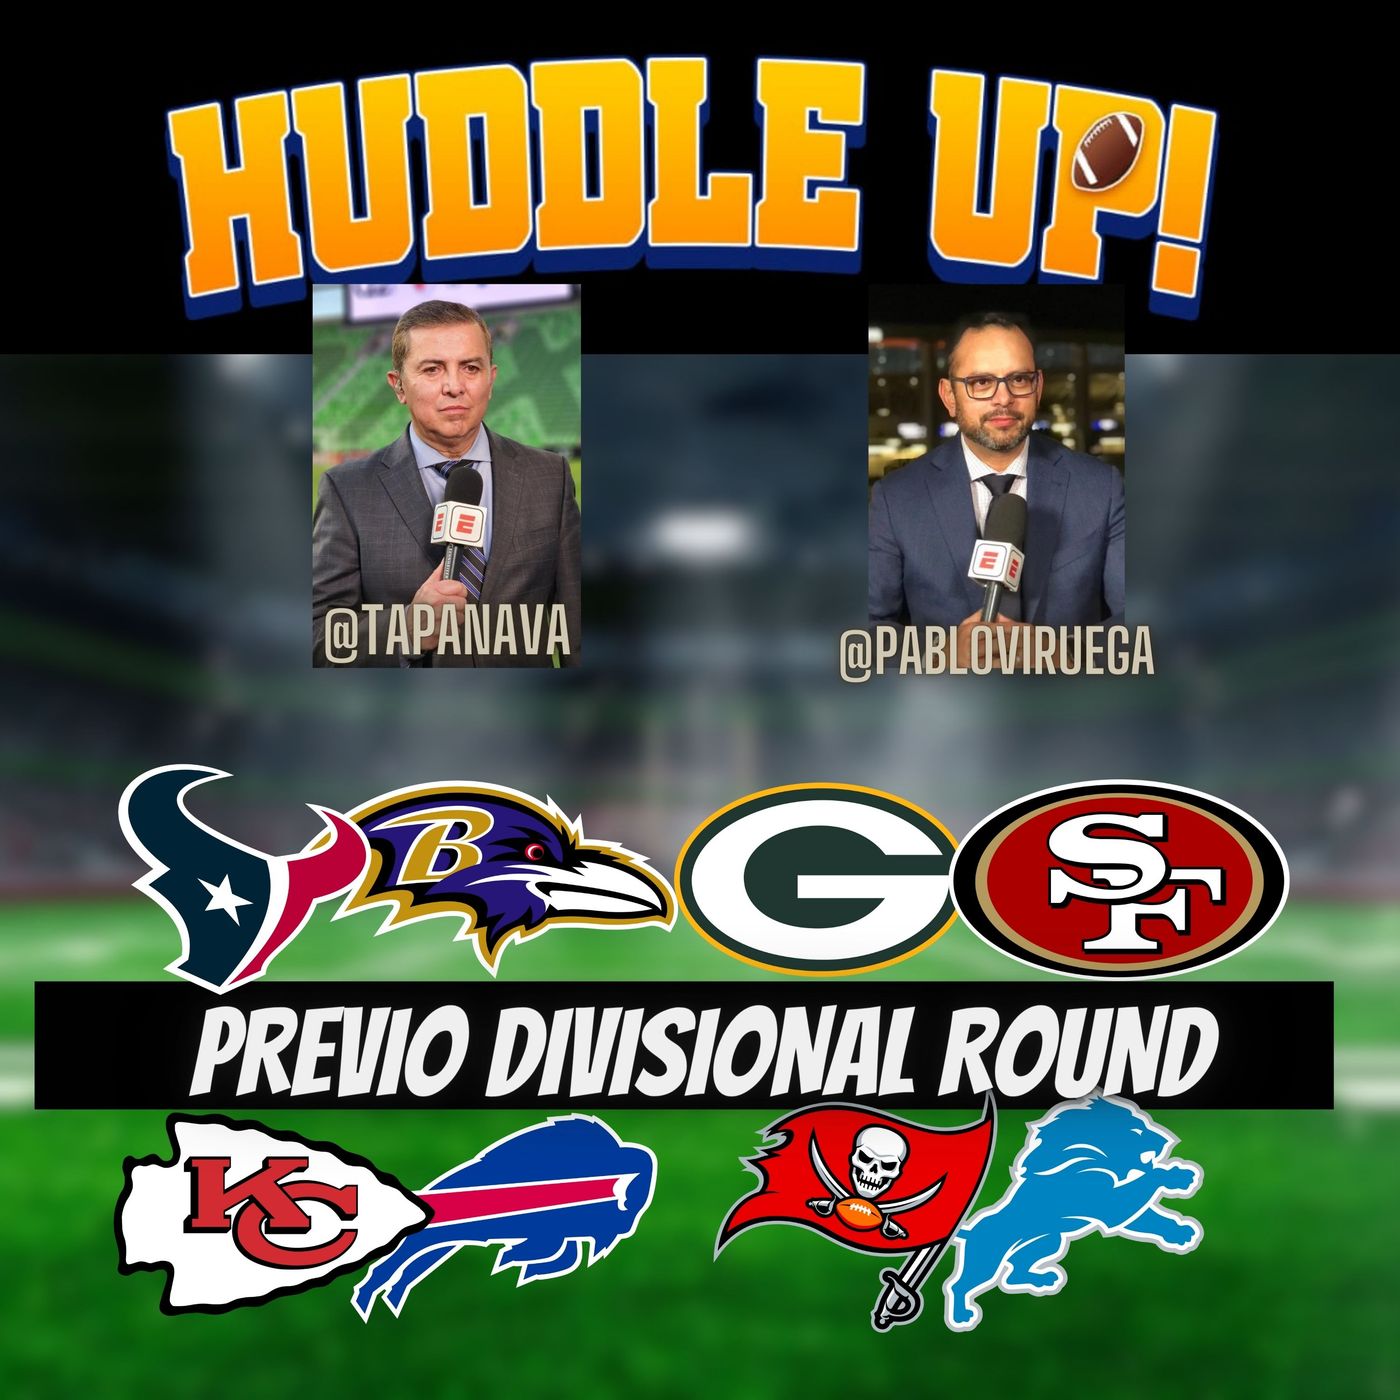 #HuddleUP Previo Ronda Divisional #NFLPlayoffs @TapaNava @PabloViruega #NFL